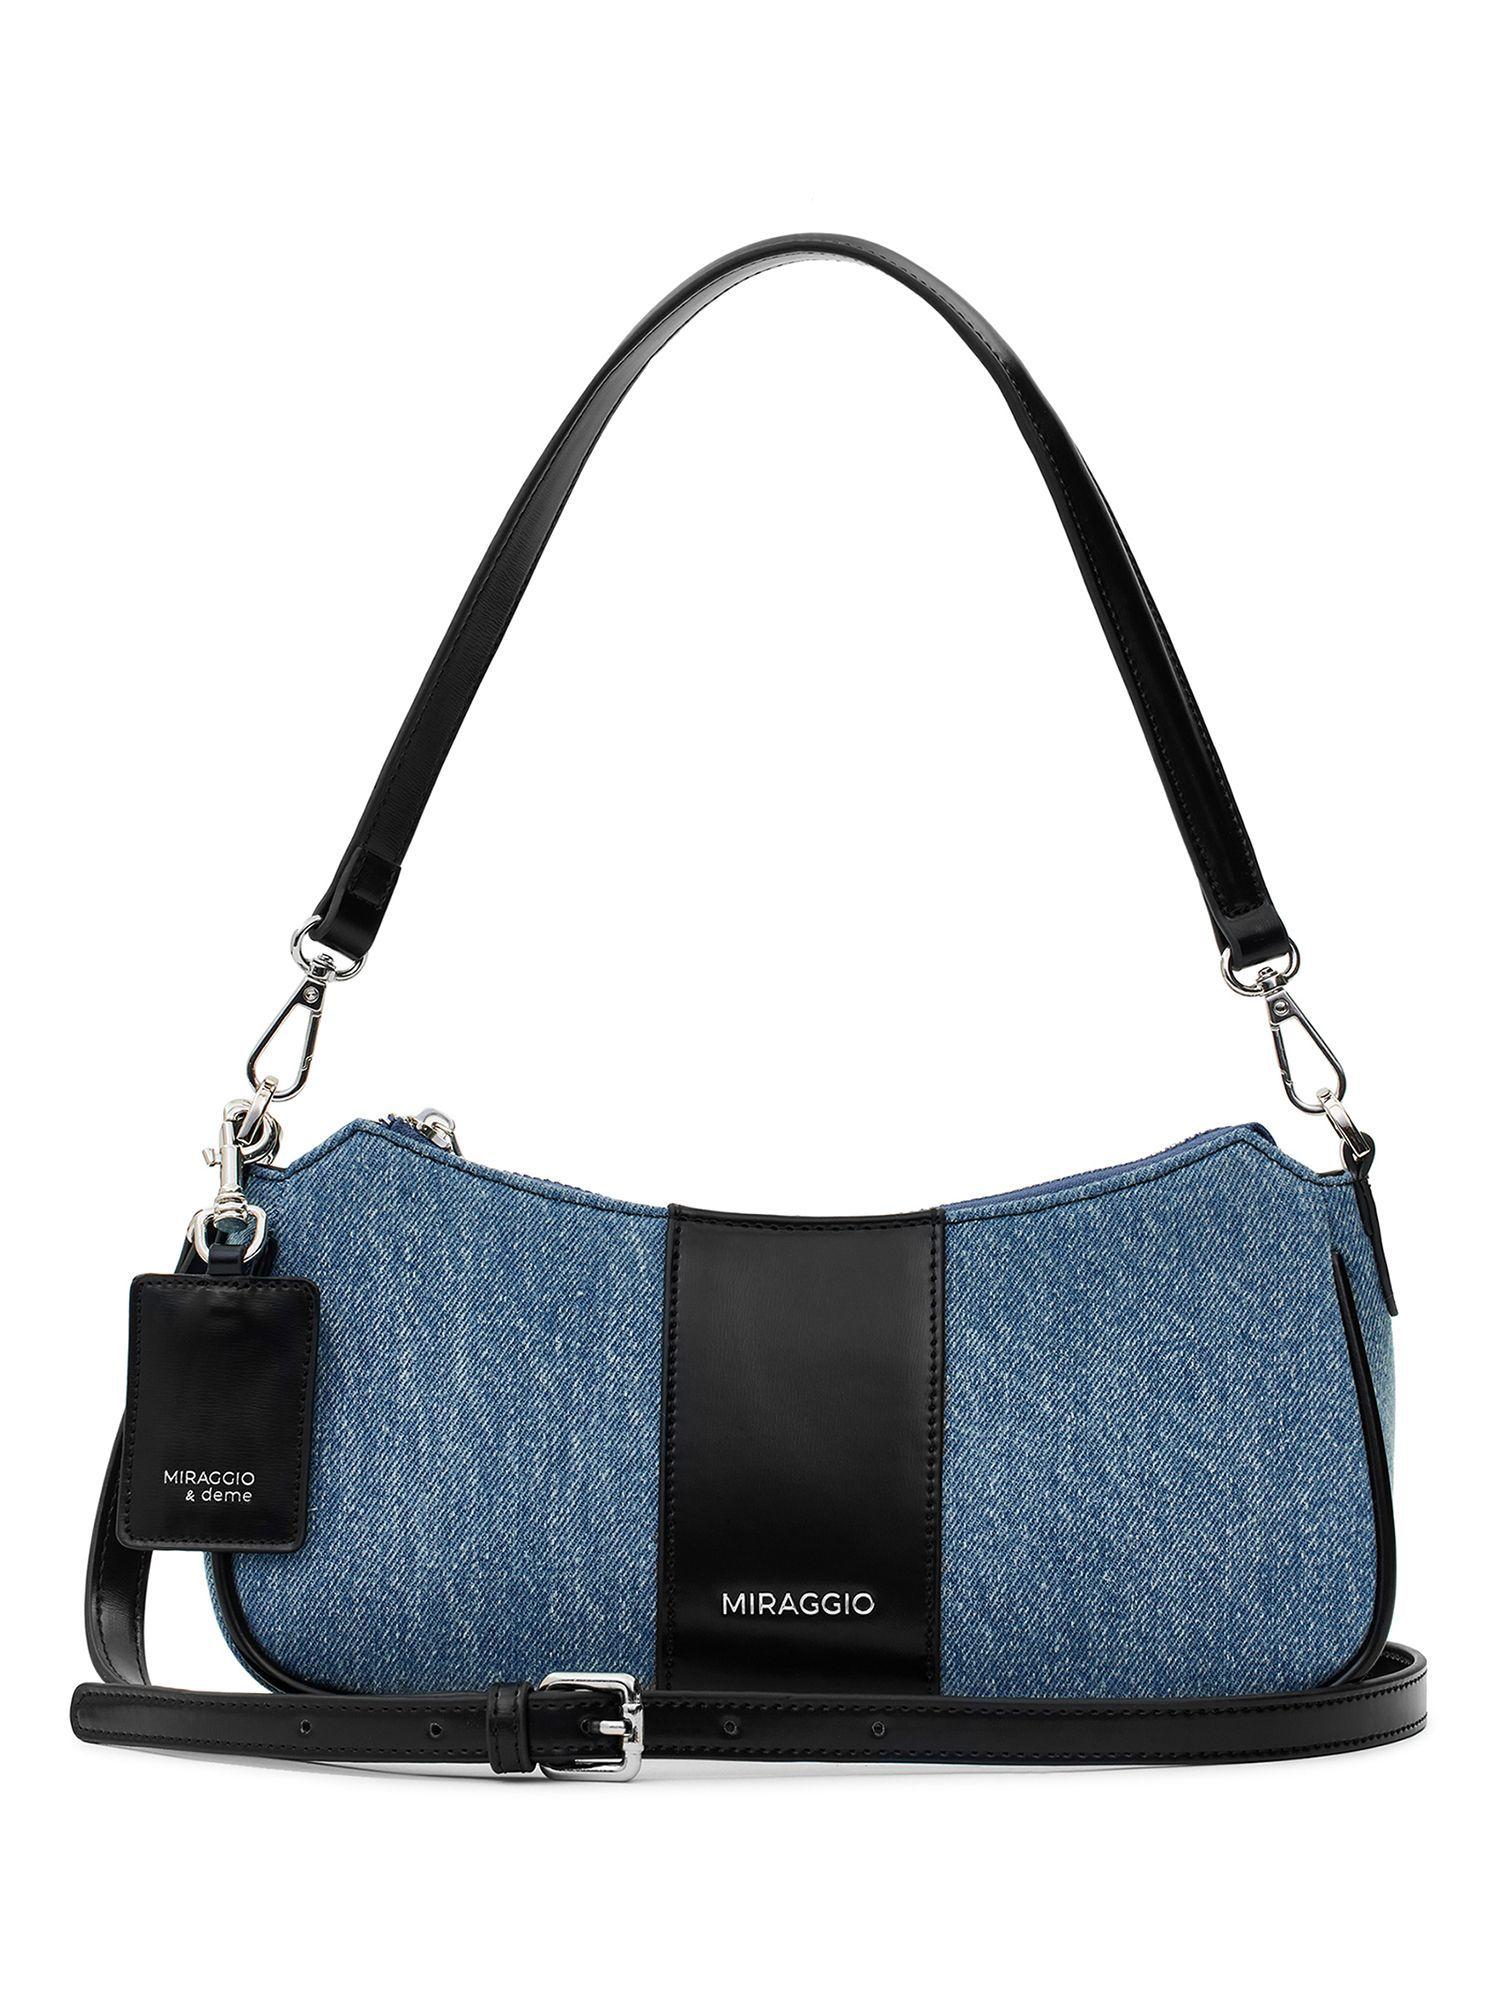 bella denim shoulder bag with crossbody strap for women -black and blue (s)